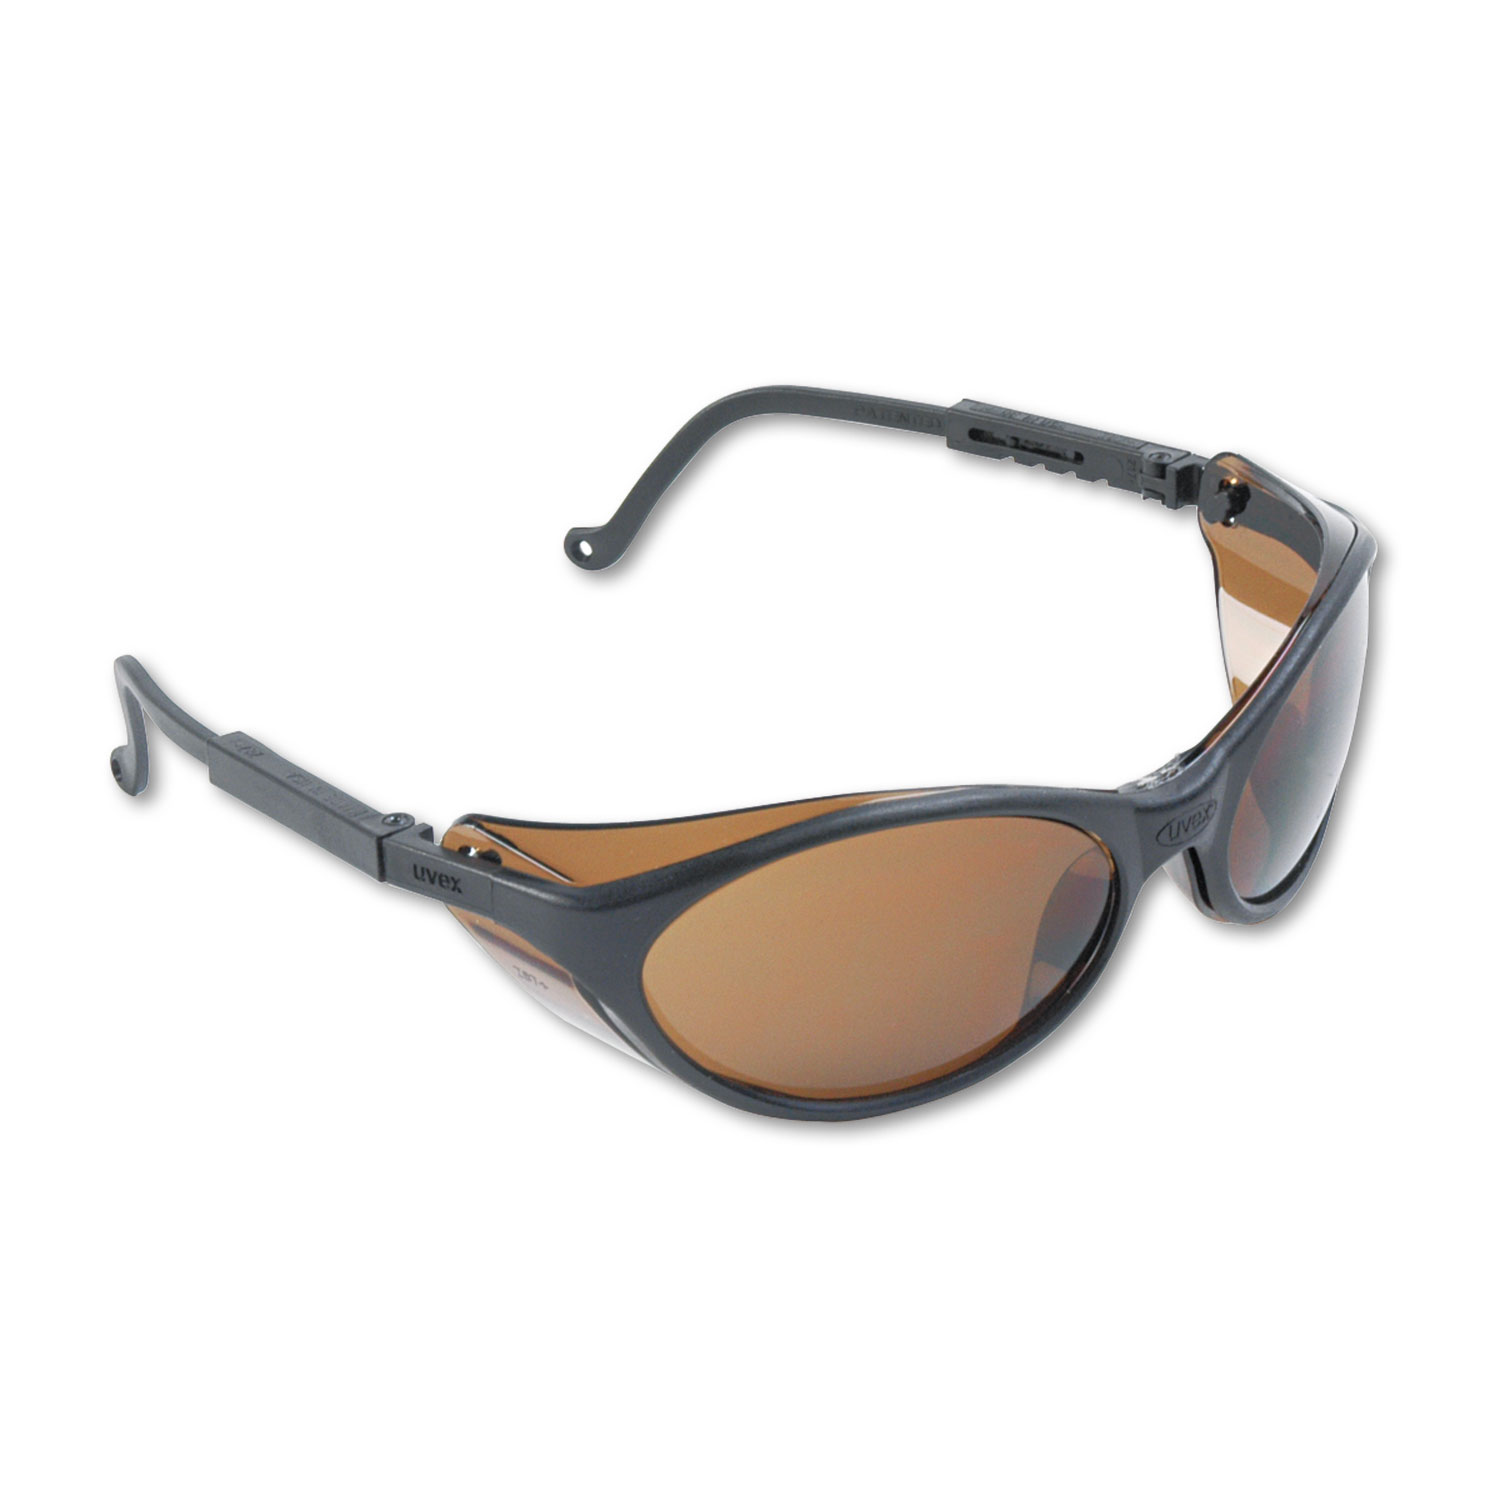  Honeywell Uvex S1603 Bandit Wraparound Safety Glasses, Black Nylon Frame, Espresso Lens (UVXS1603) 